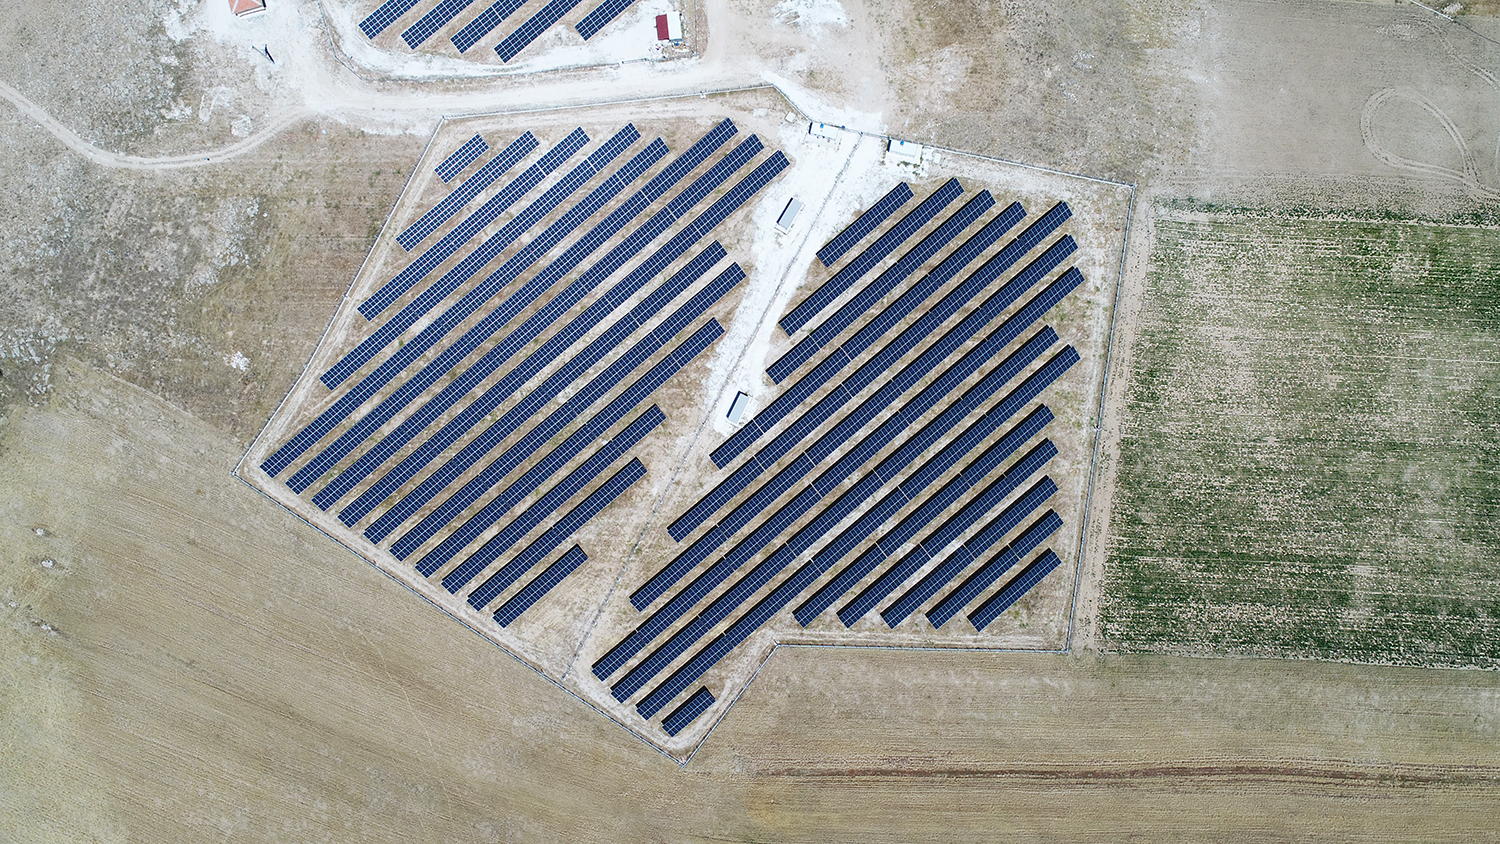 NİĞDE - KENTPAR OTOMOTİV 2.523 kWp Arazi Üzeri Güneş Santrali-2